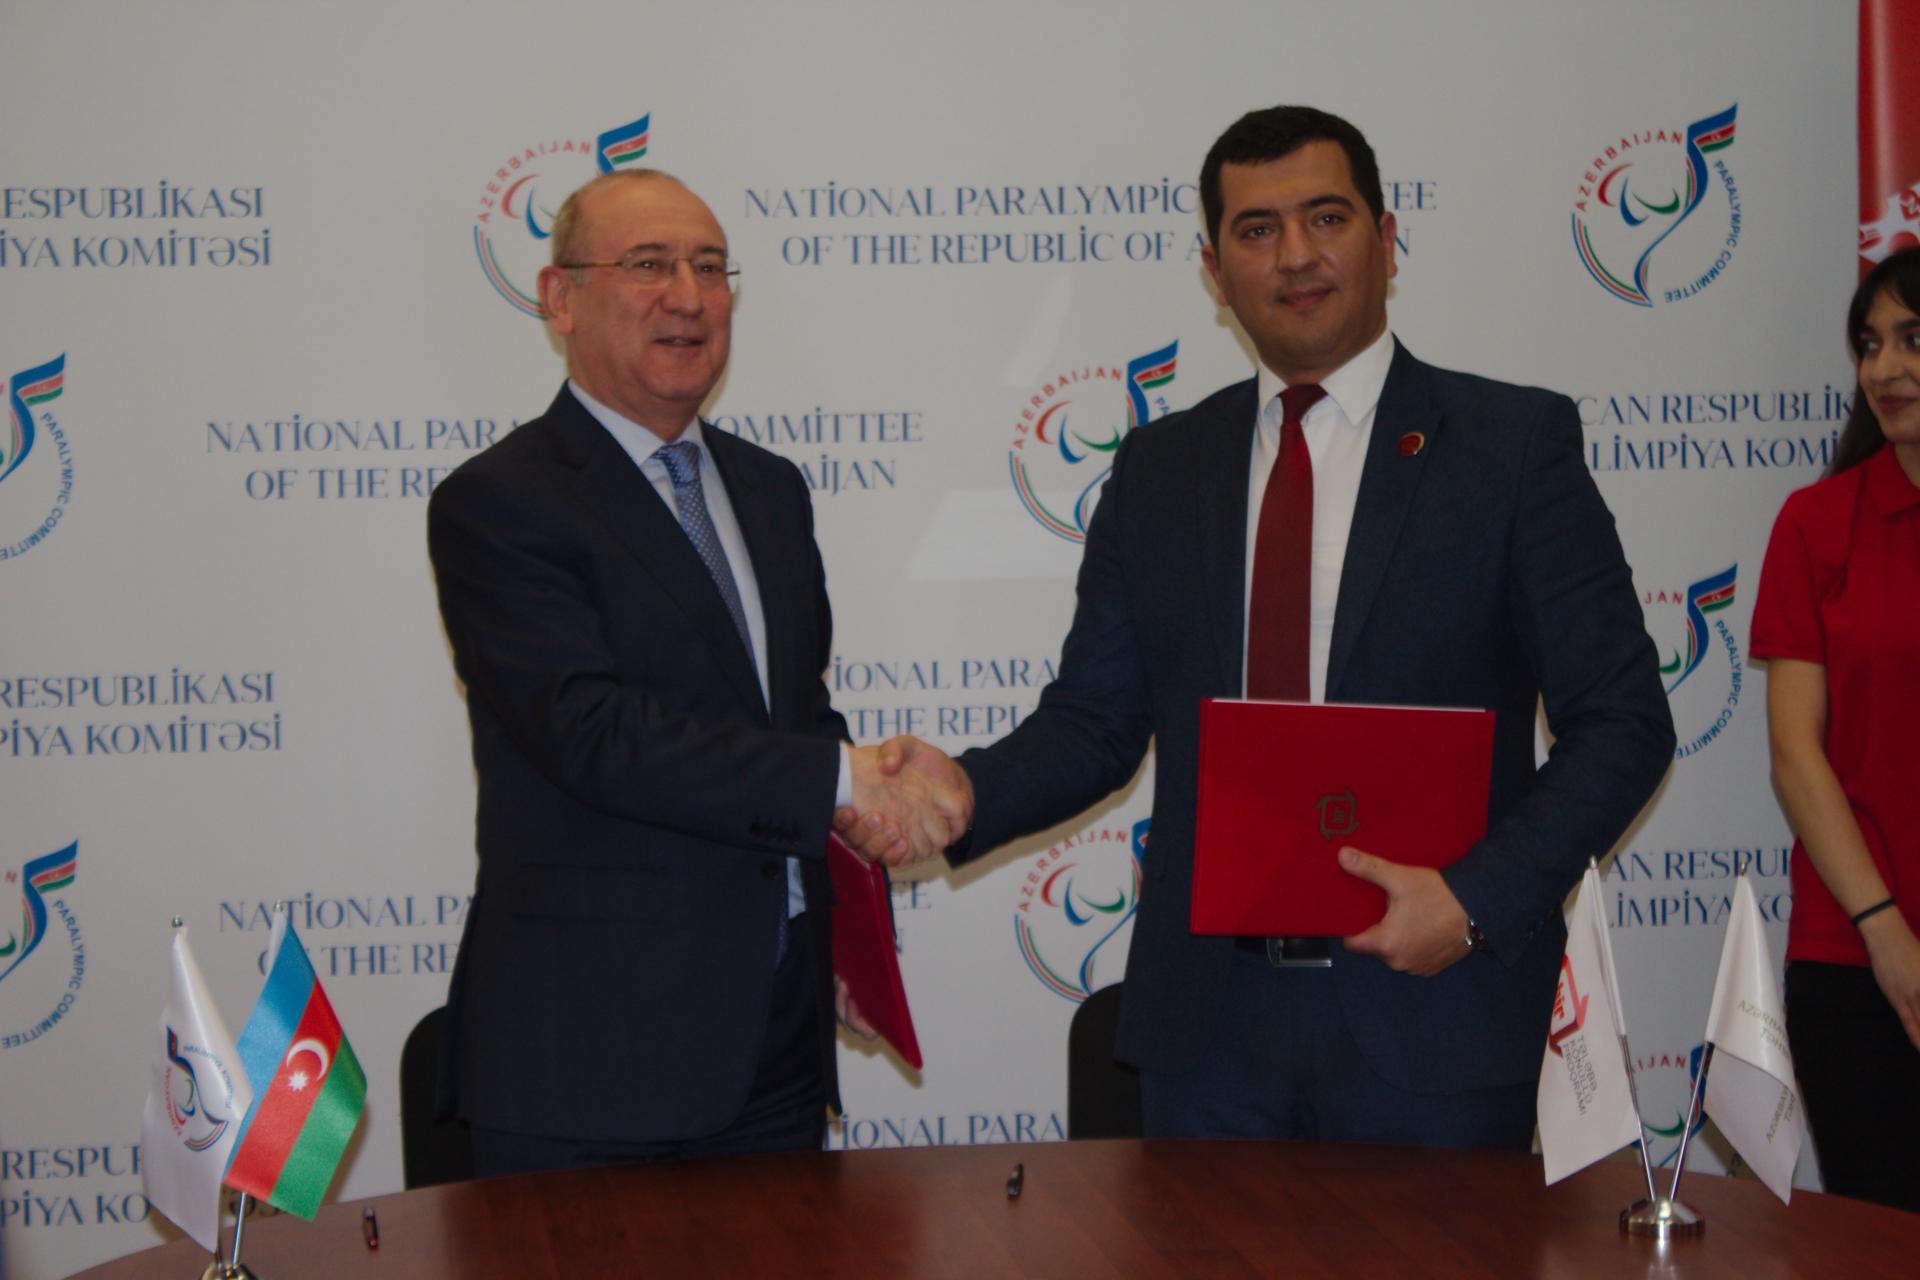 В Азербайджане будет активно развиваться инклюзивное волонтерское движение (ФОТО)